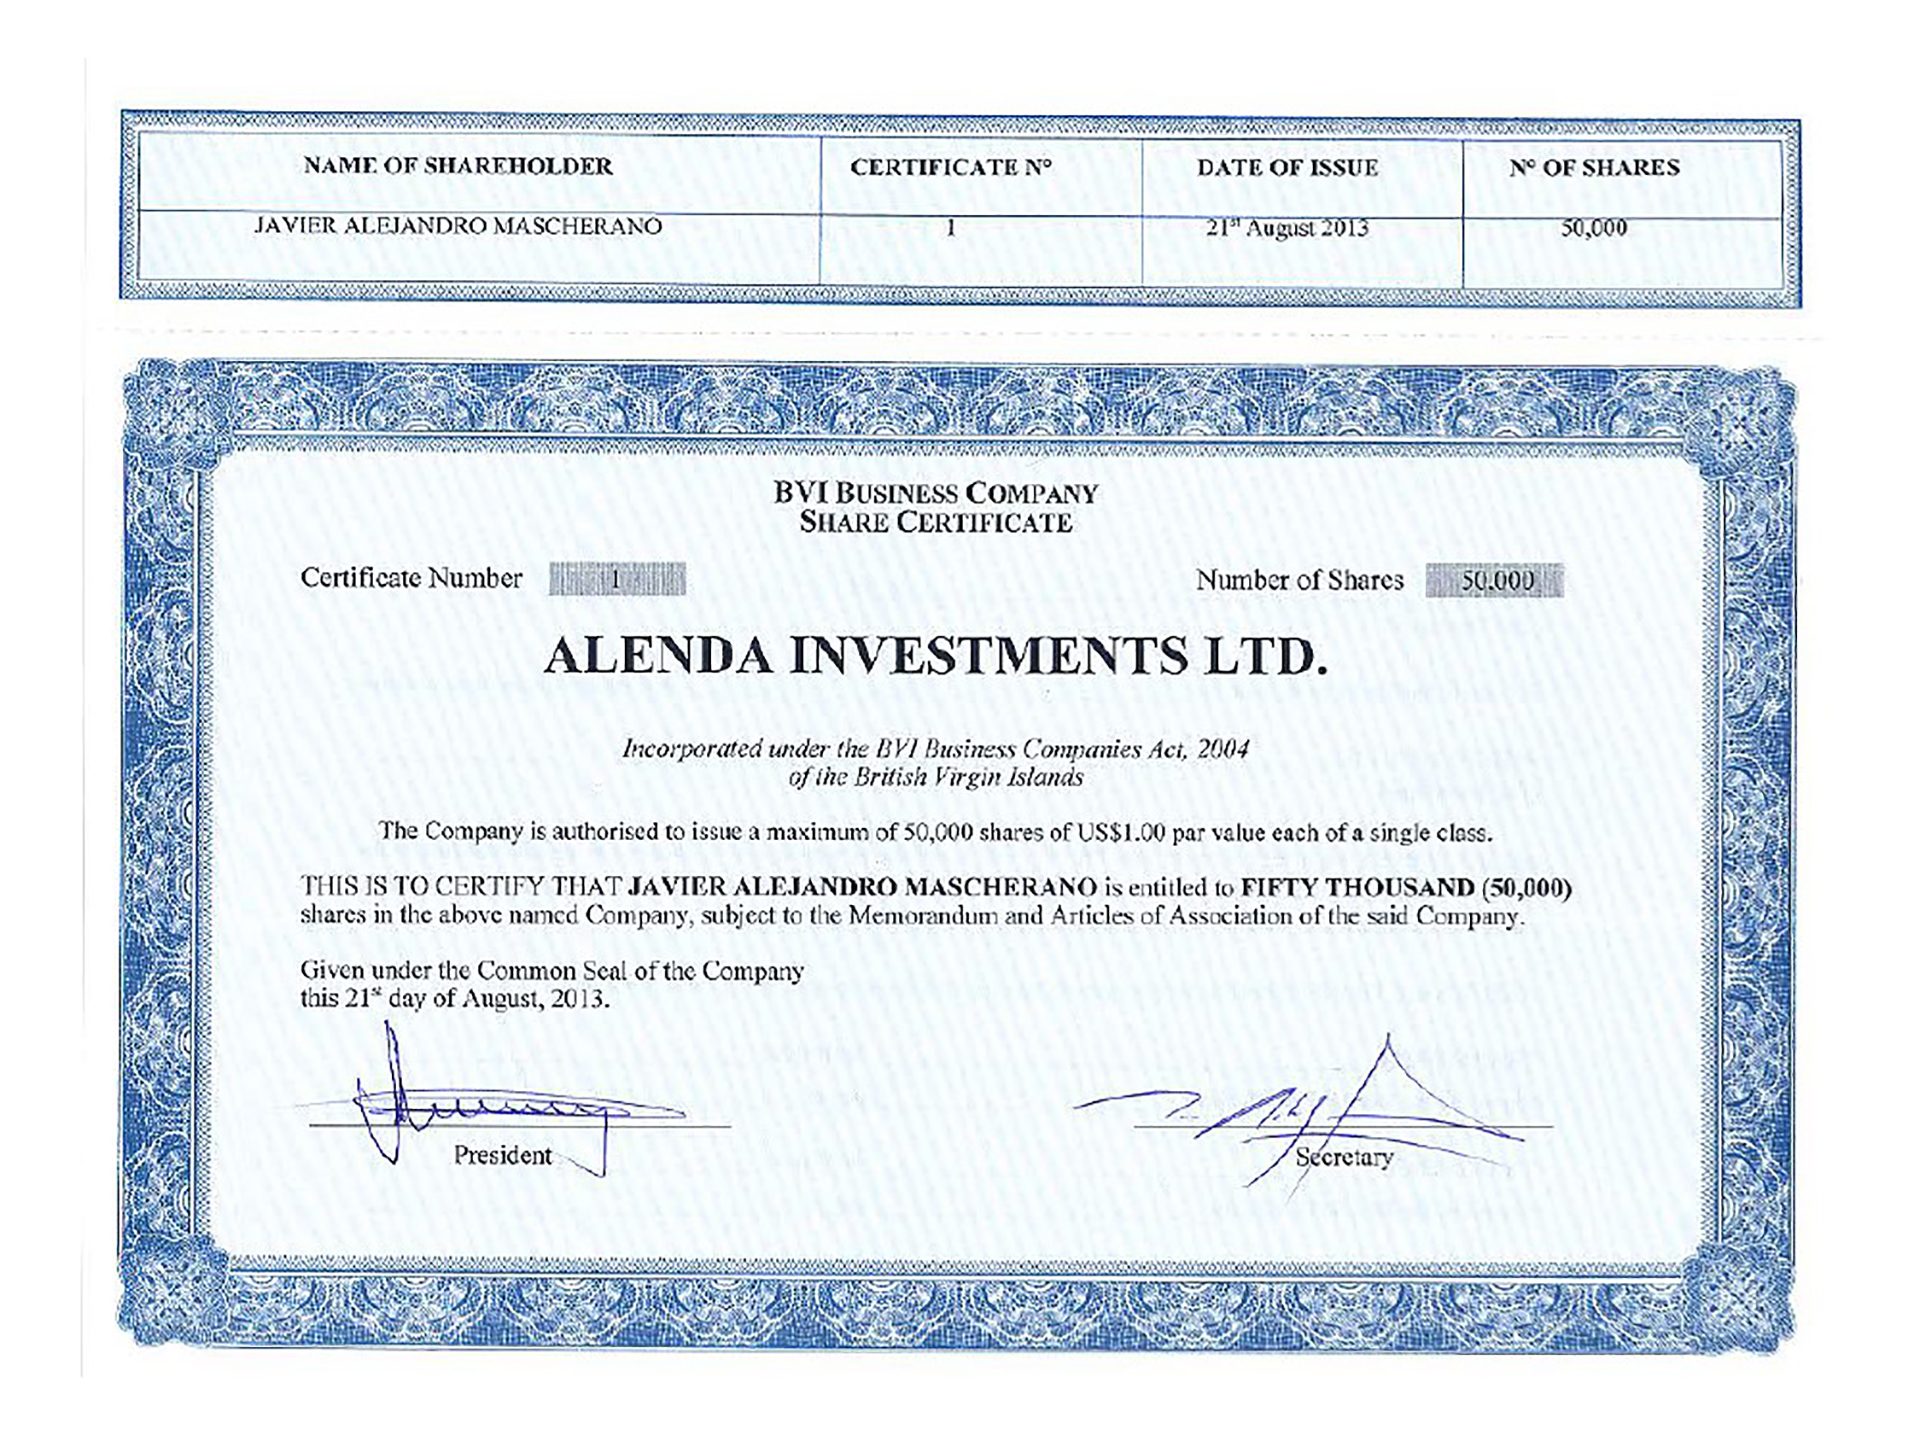 El certificado de Alenda Investments que identifica a Mascherano como su titular